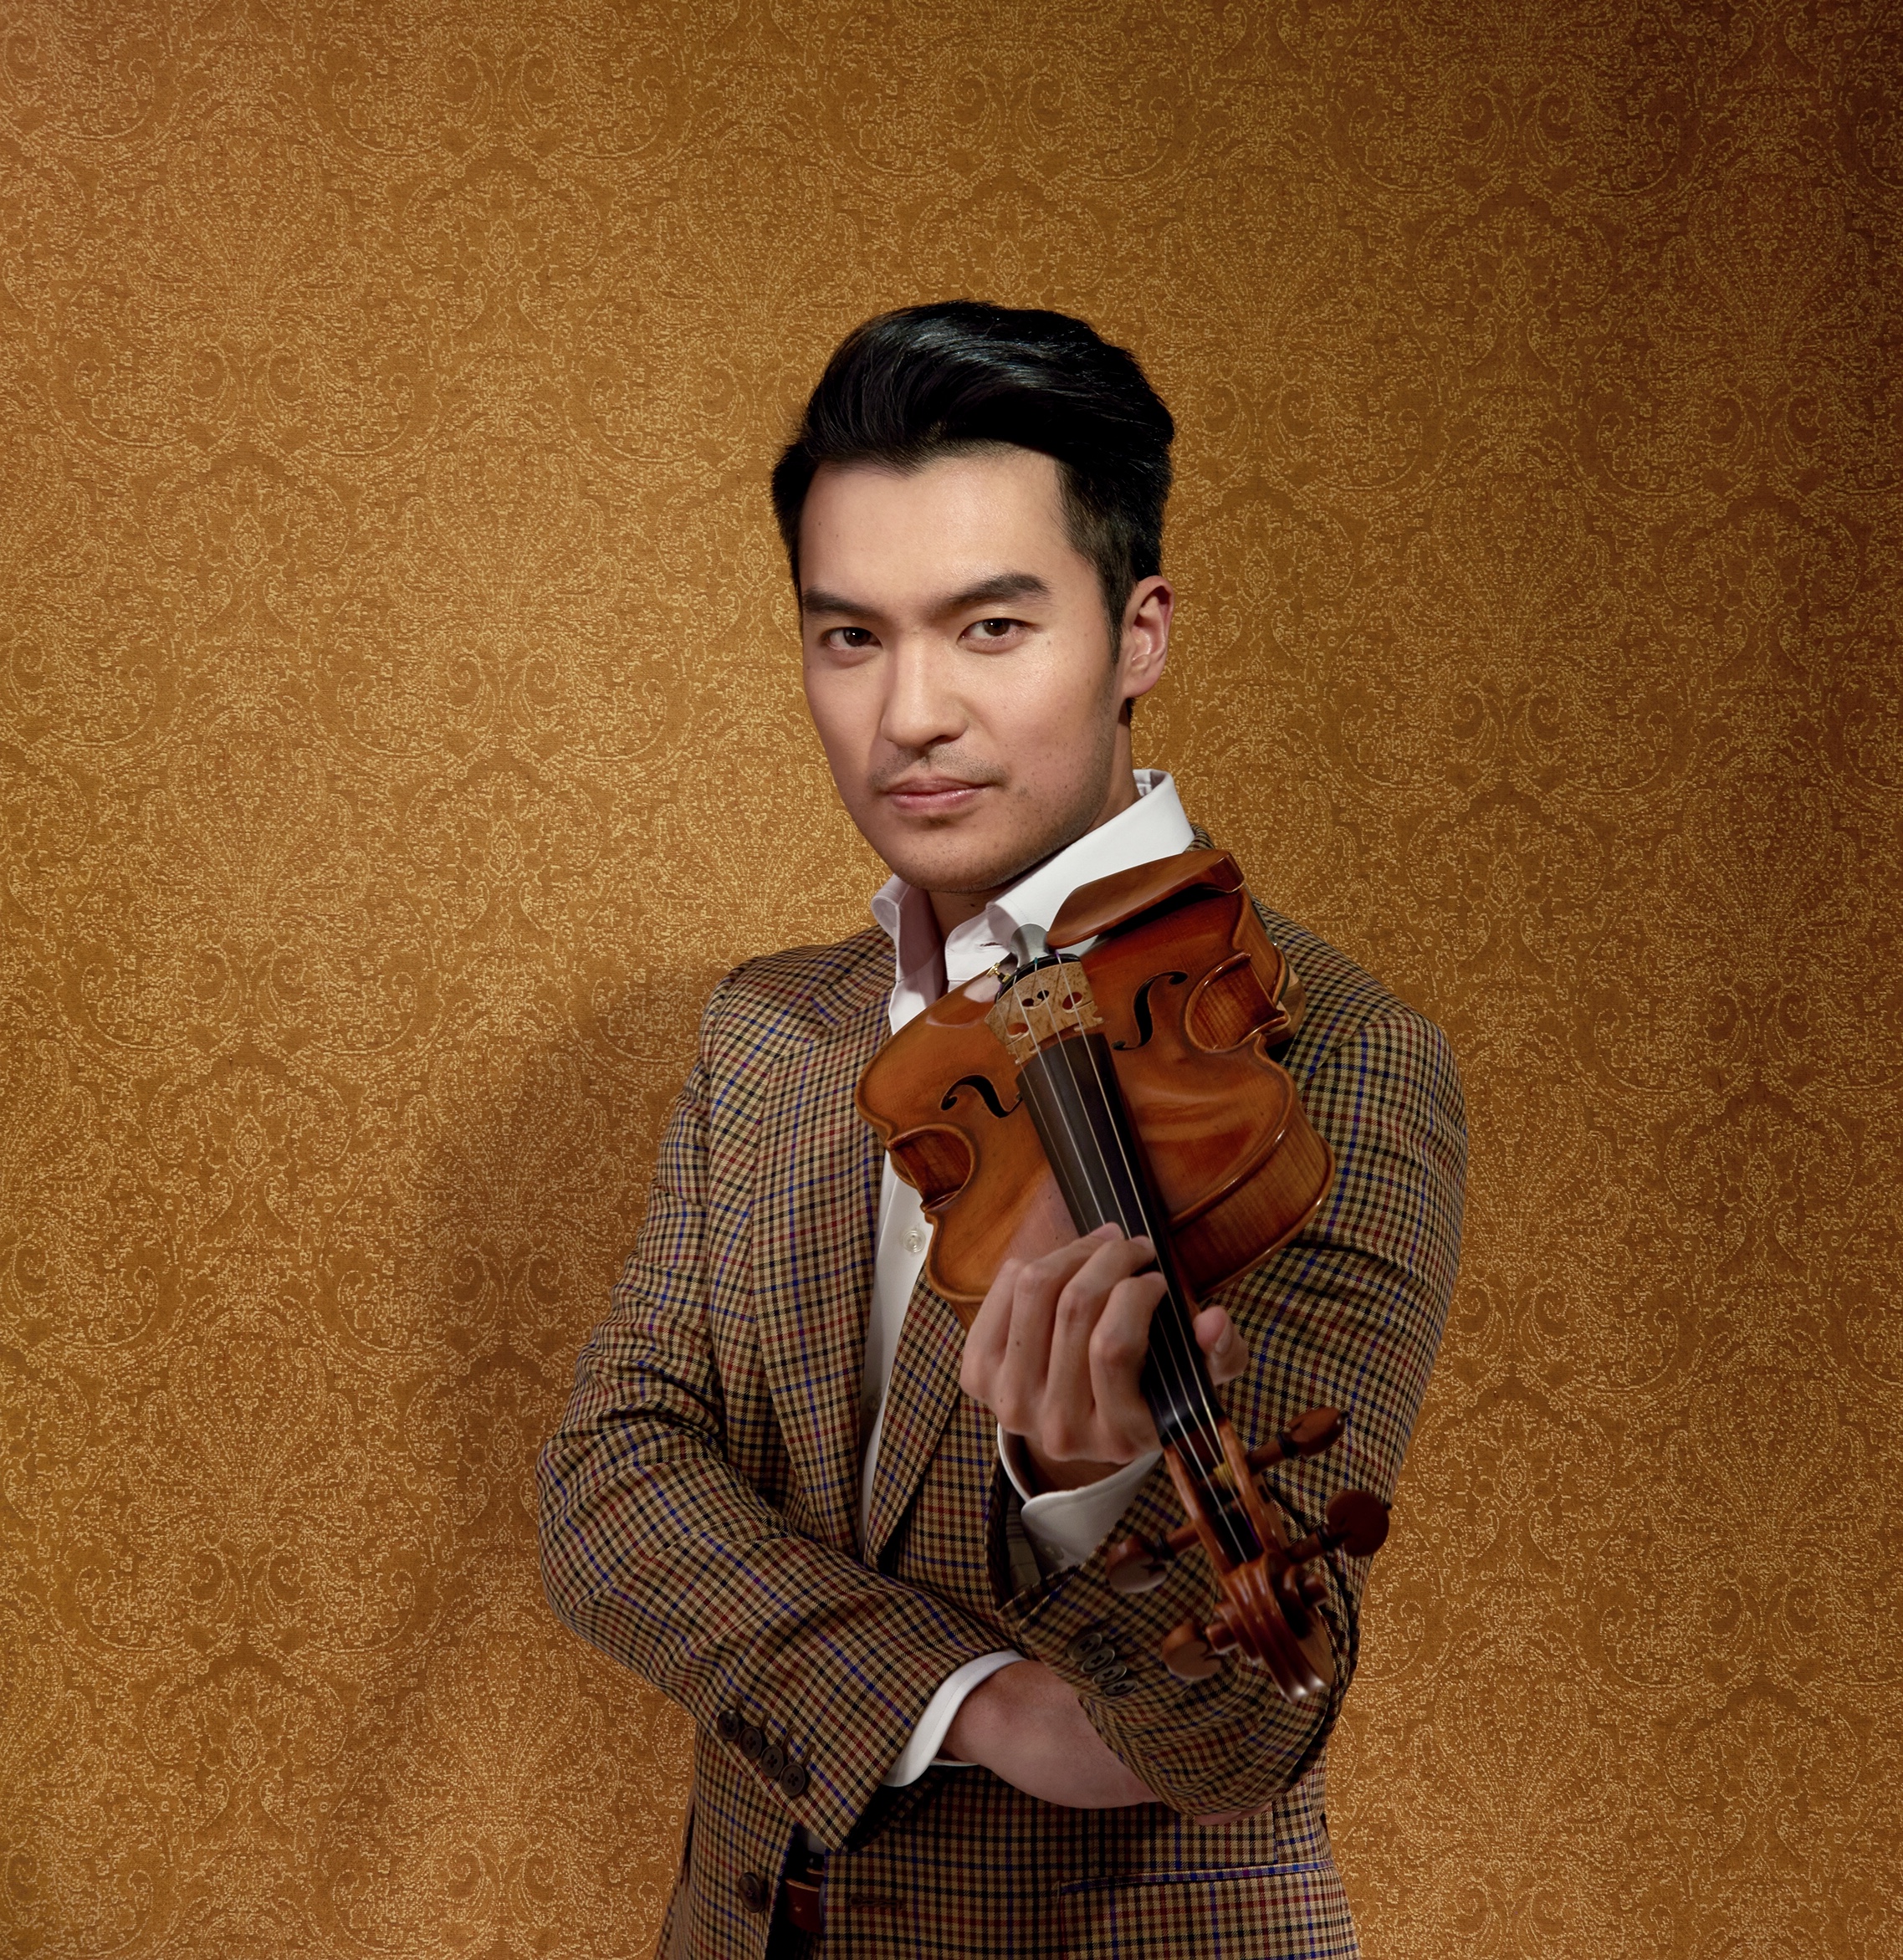 바이올린, 레이 첸(사진)